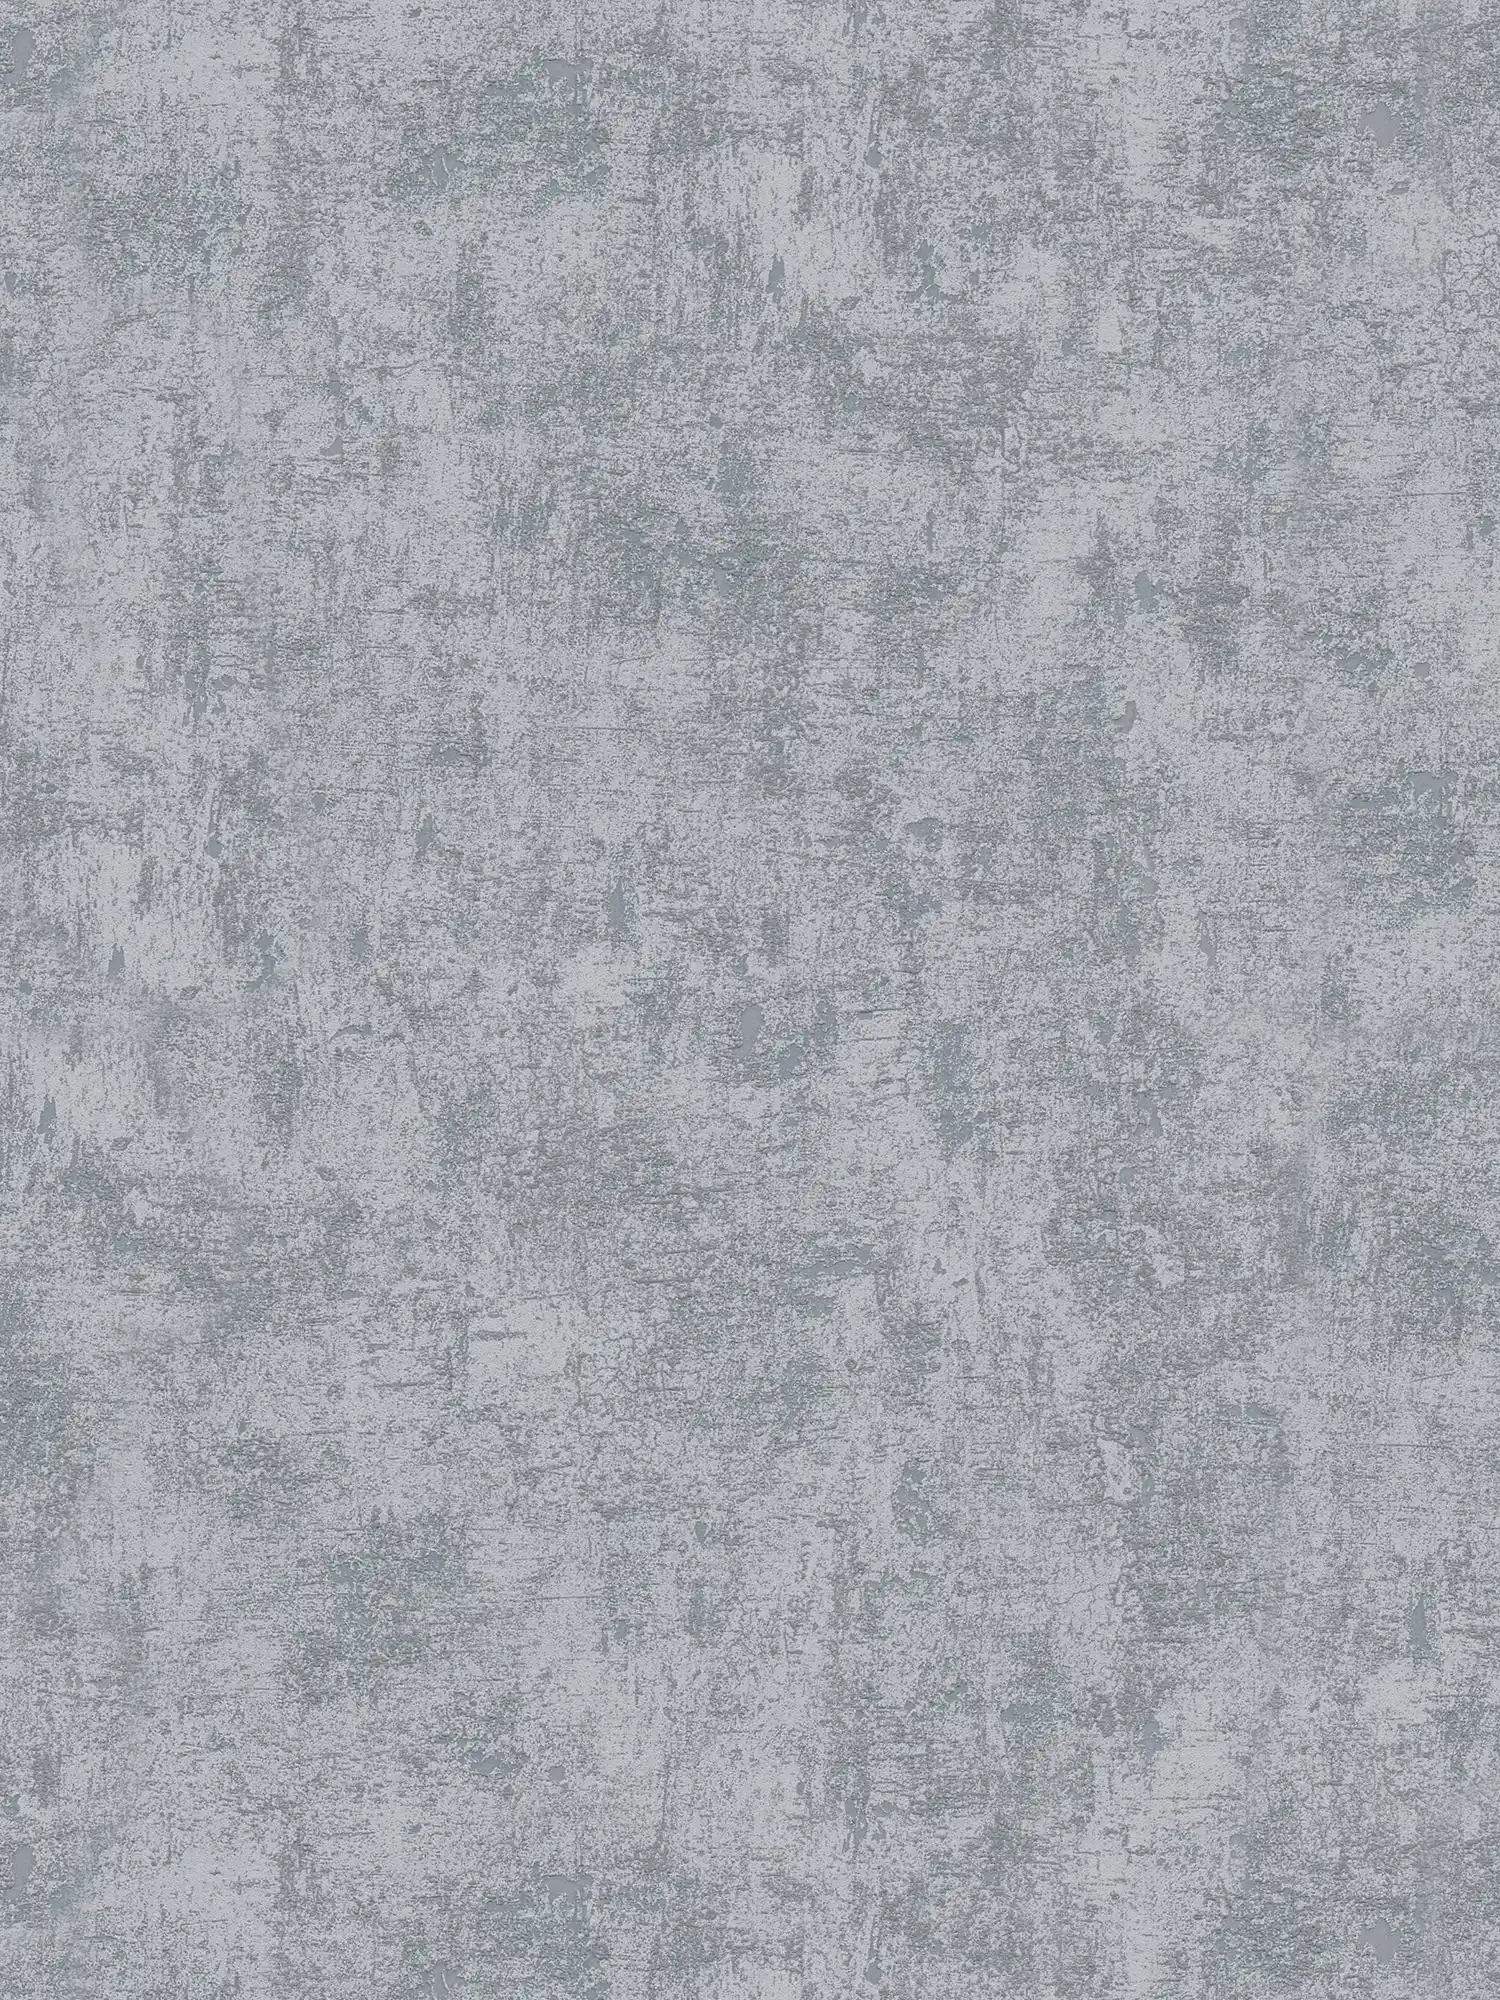         Dark non-woven wallpaper with concrete look - grey
    